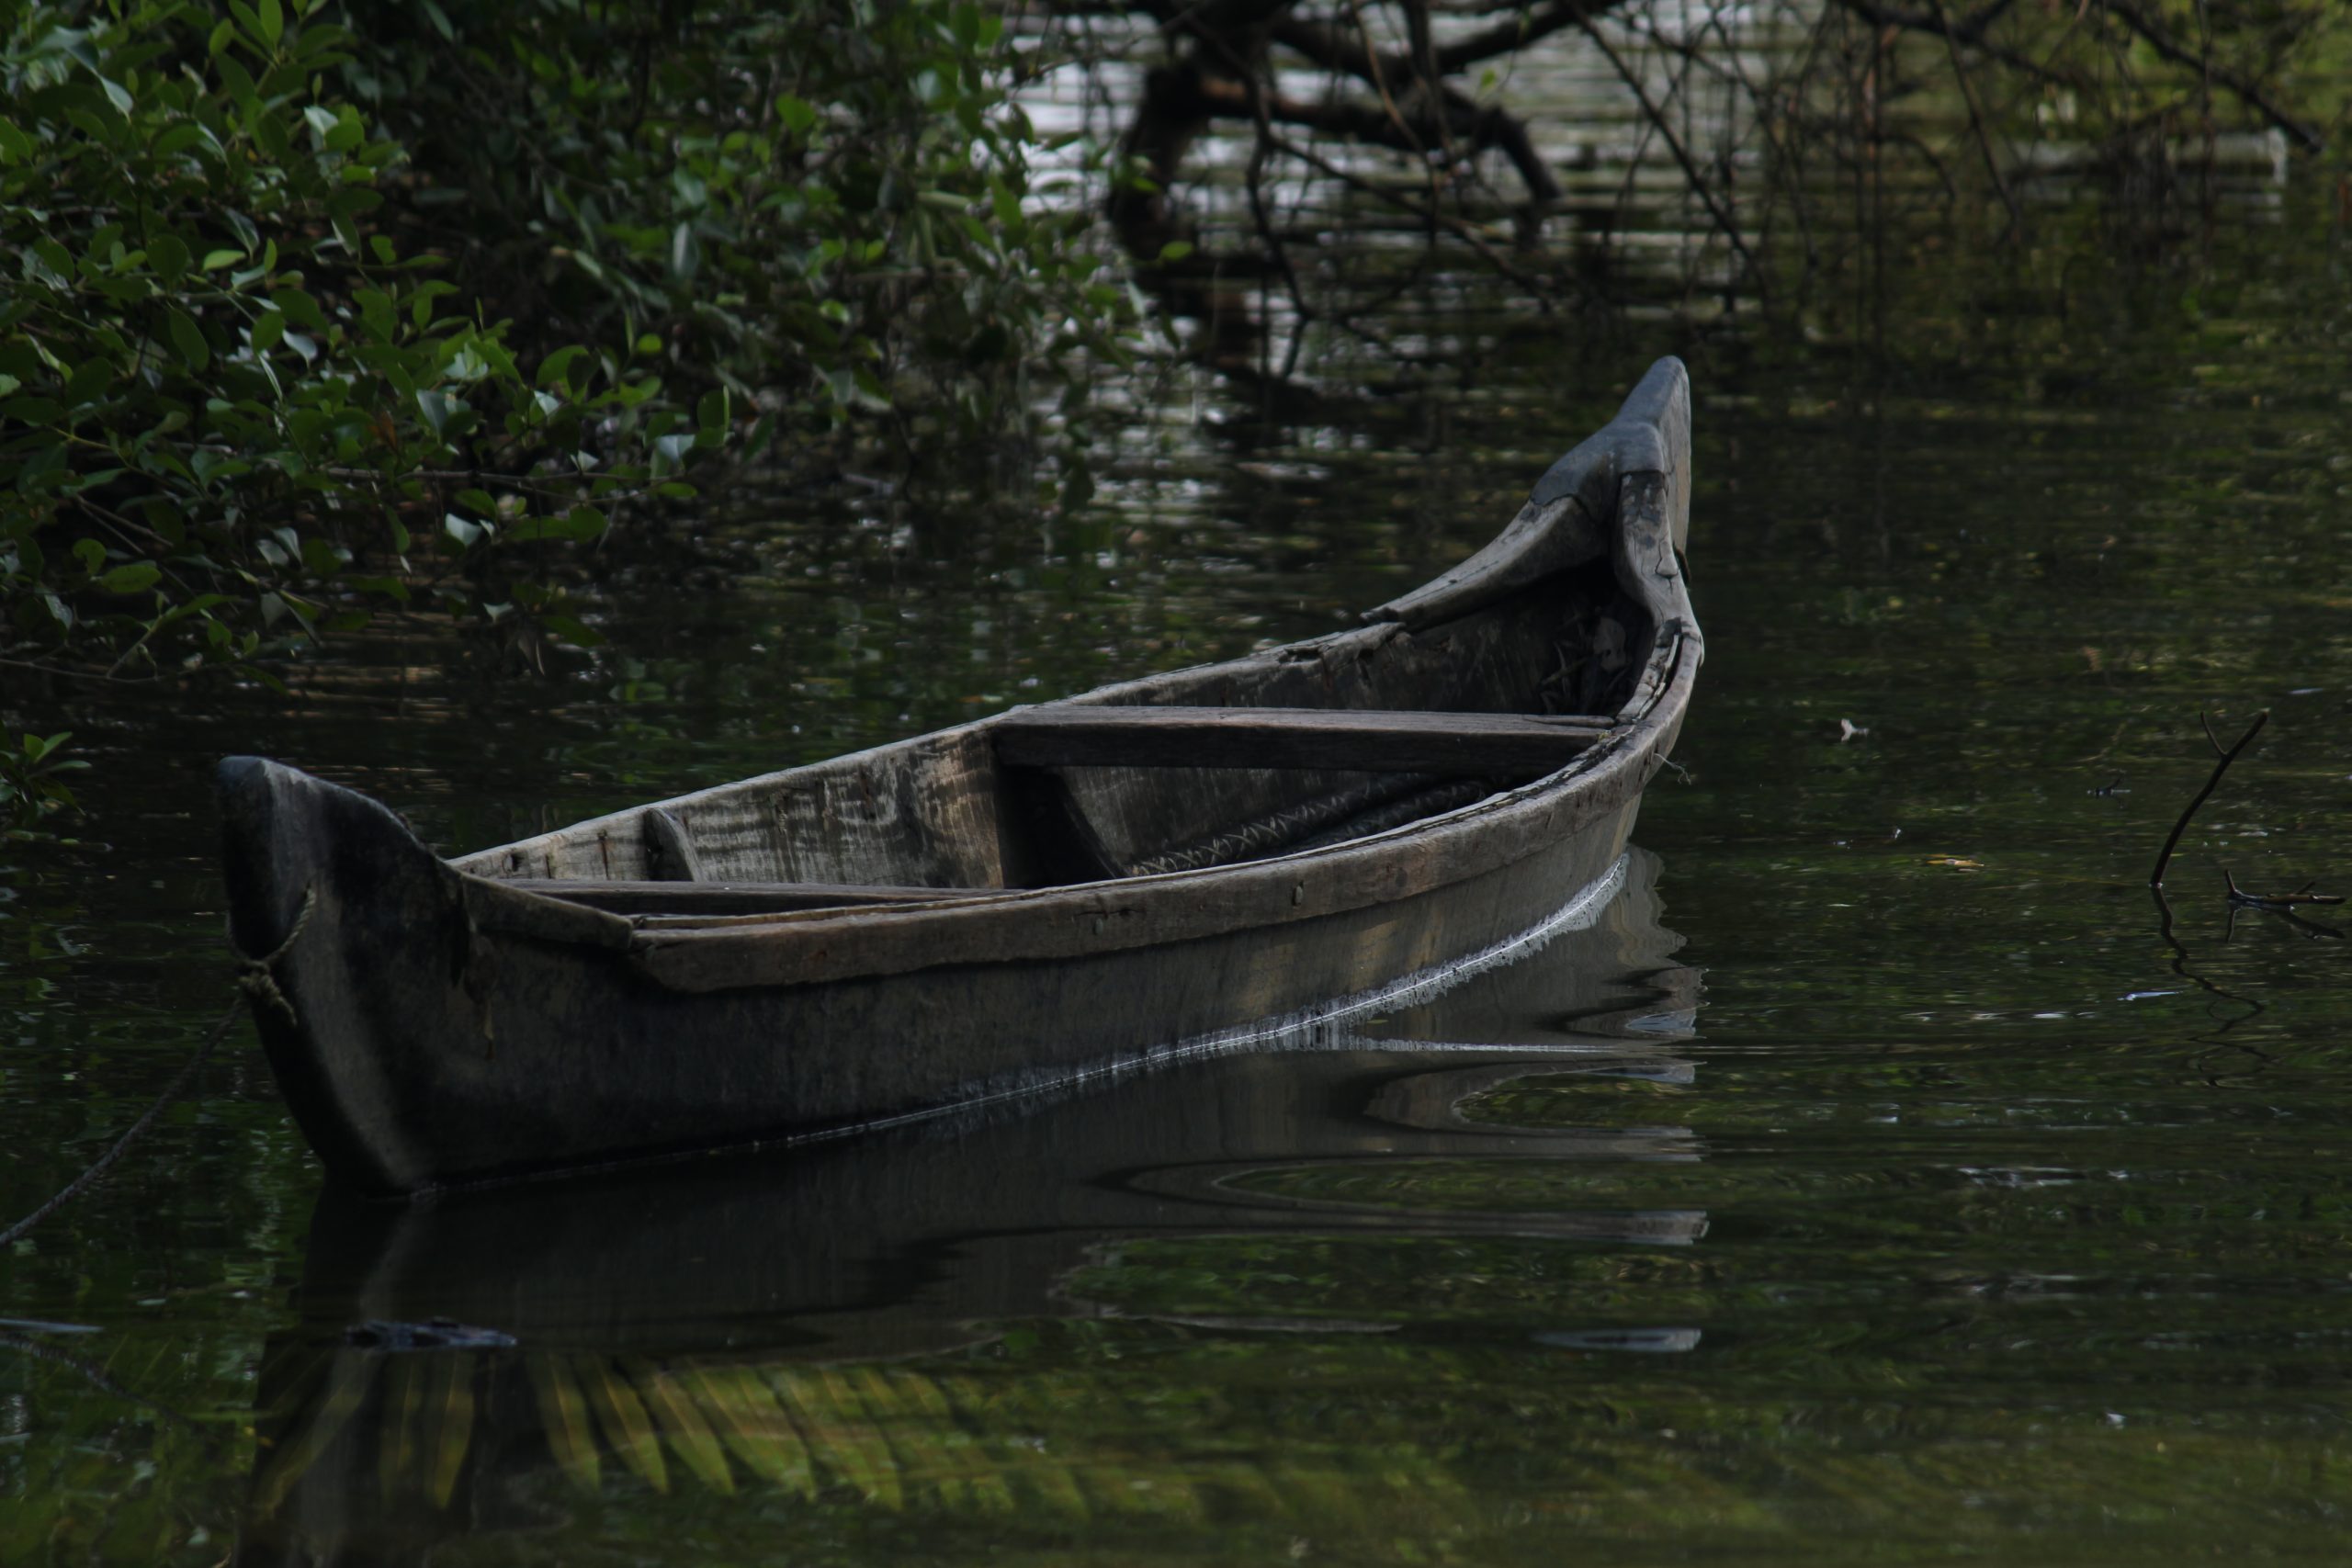 Boat in the river